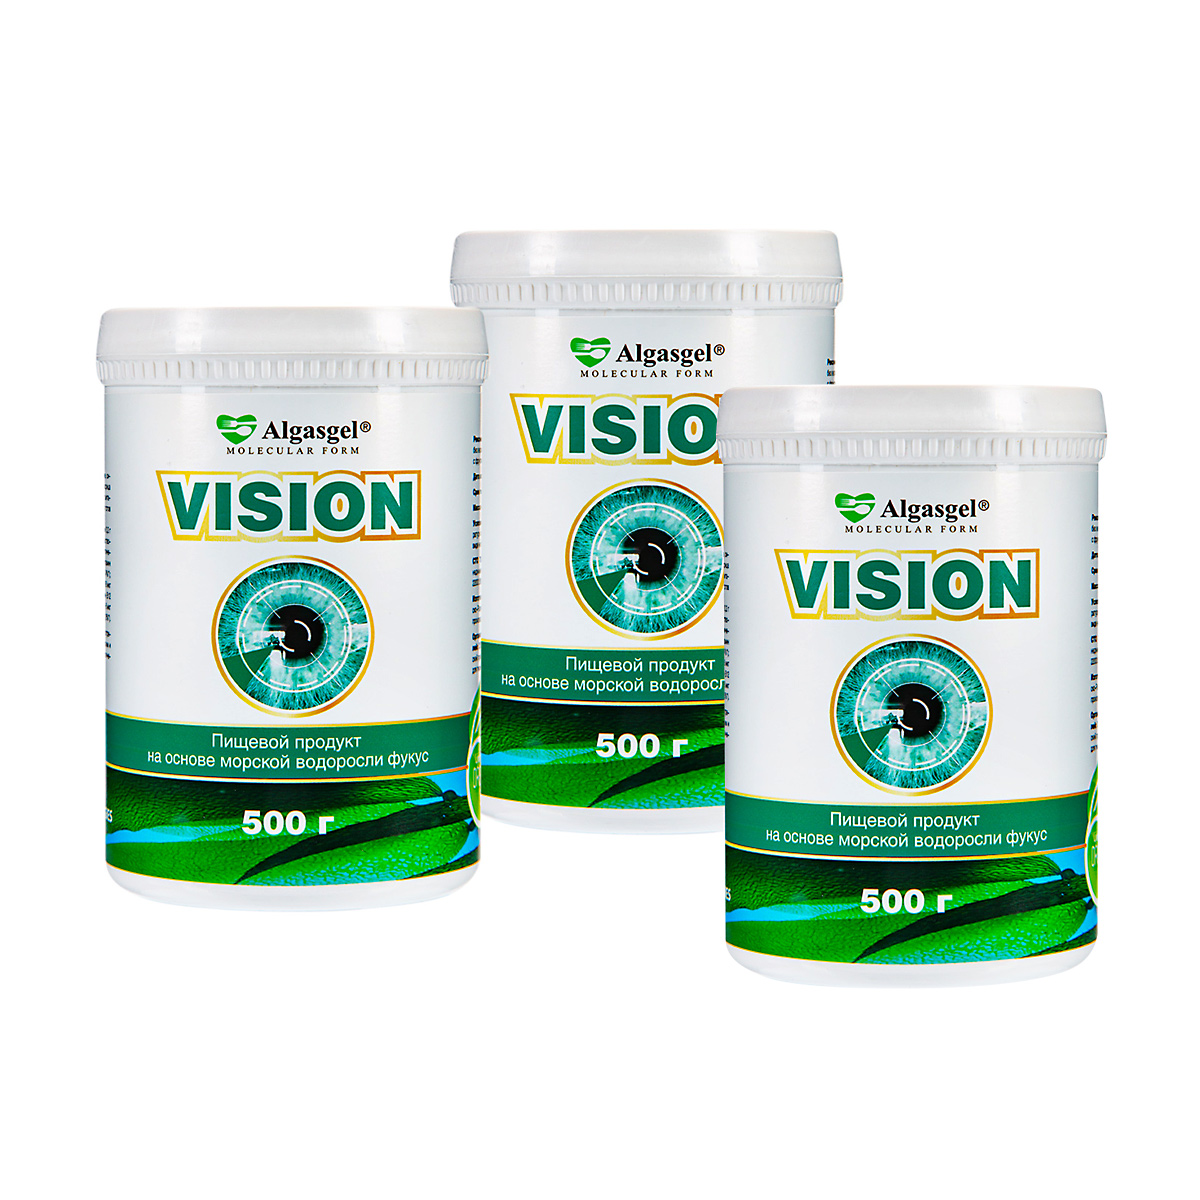 Algasgel Vision для здоровья глаз (2 уп. по 500 г + 1 в подарок)